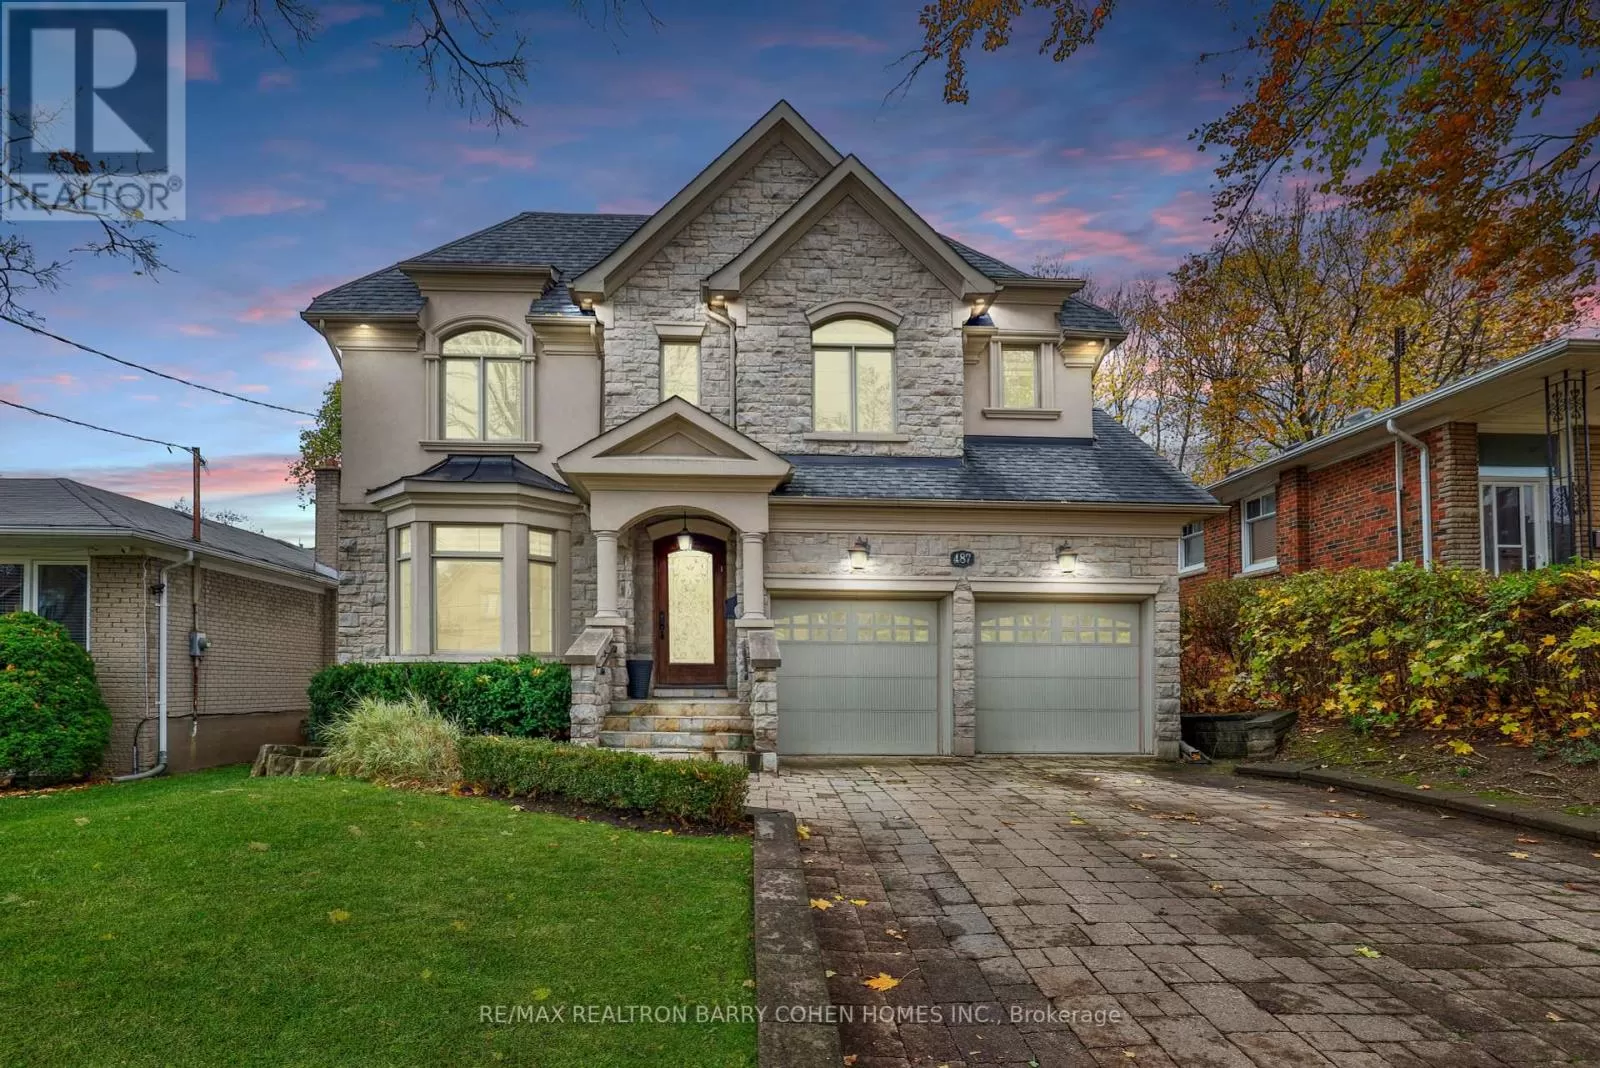 House for rent: 487 Glengarry Avenue, Toronto, Ontario M5M 1E9